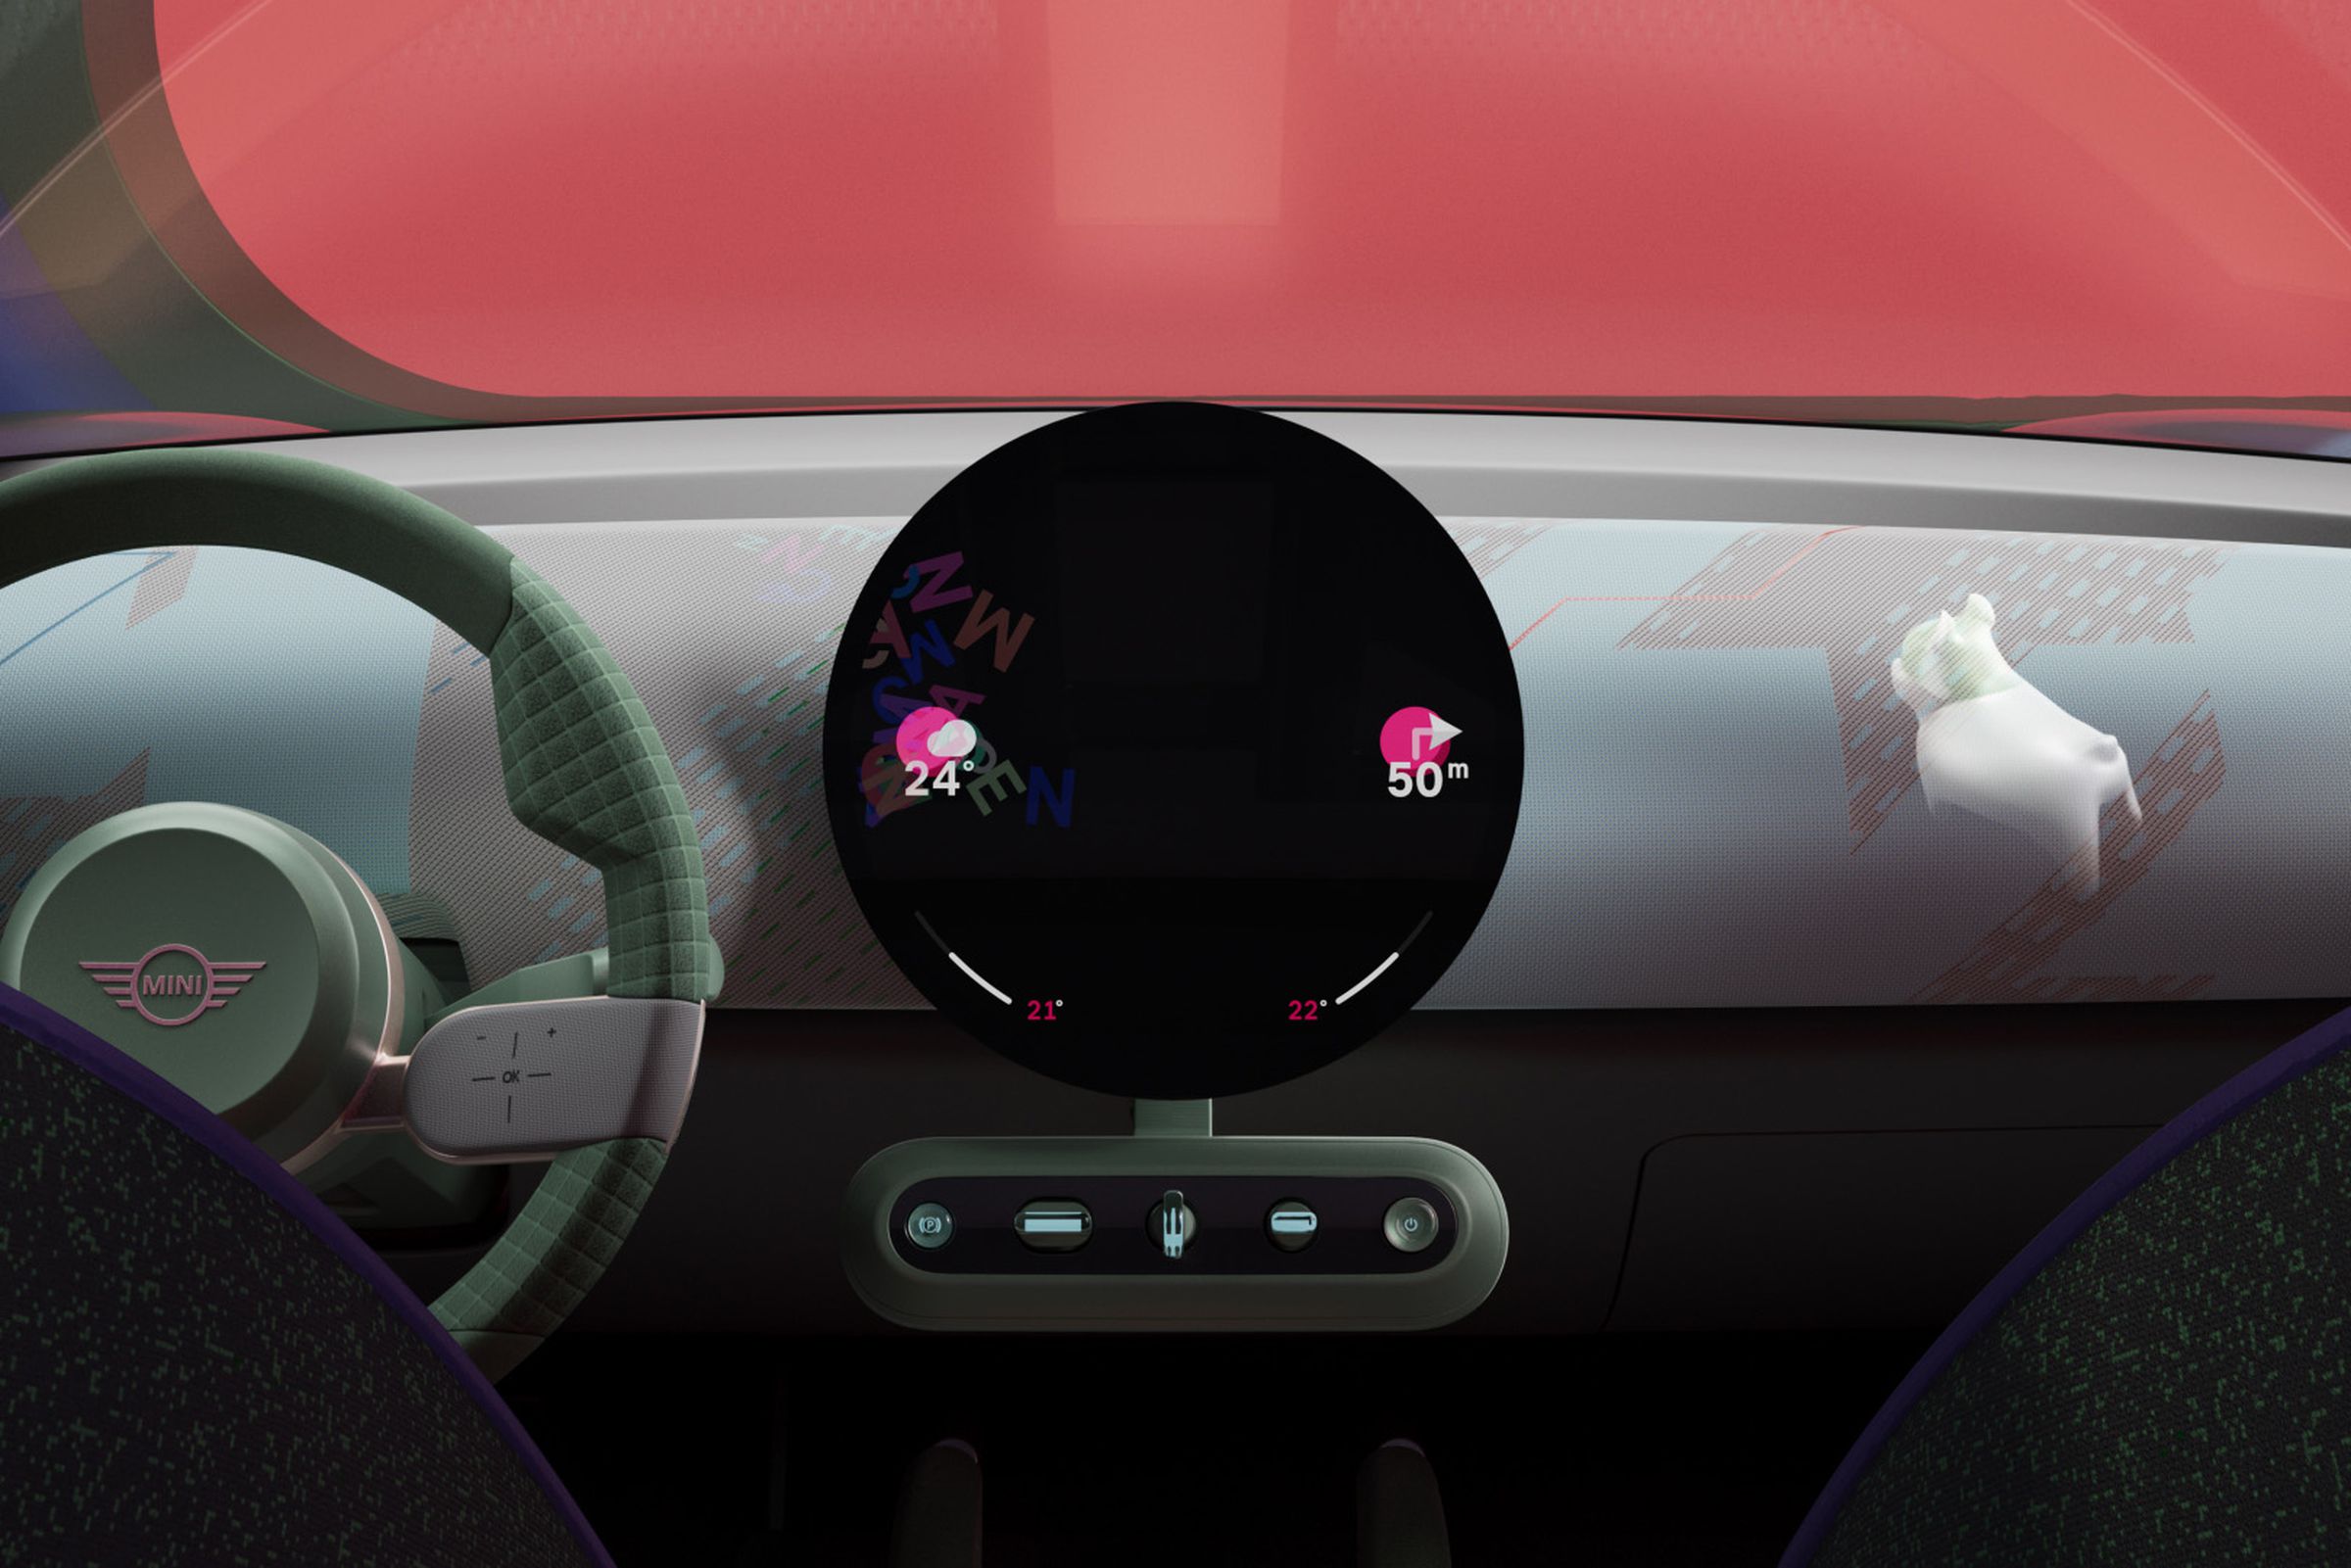 Spike aparece no visor do painel do carro.